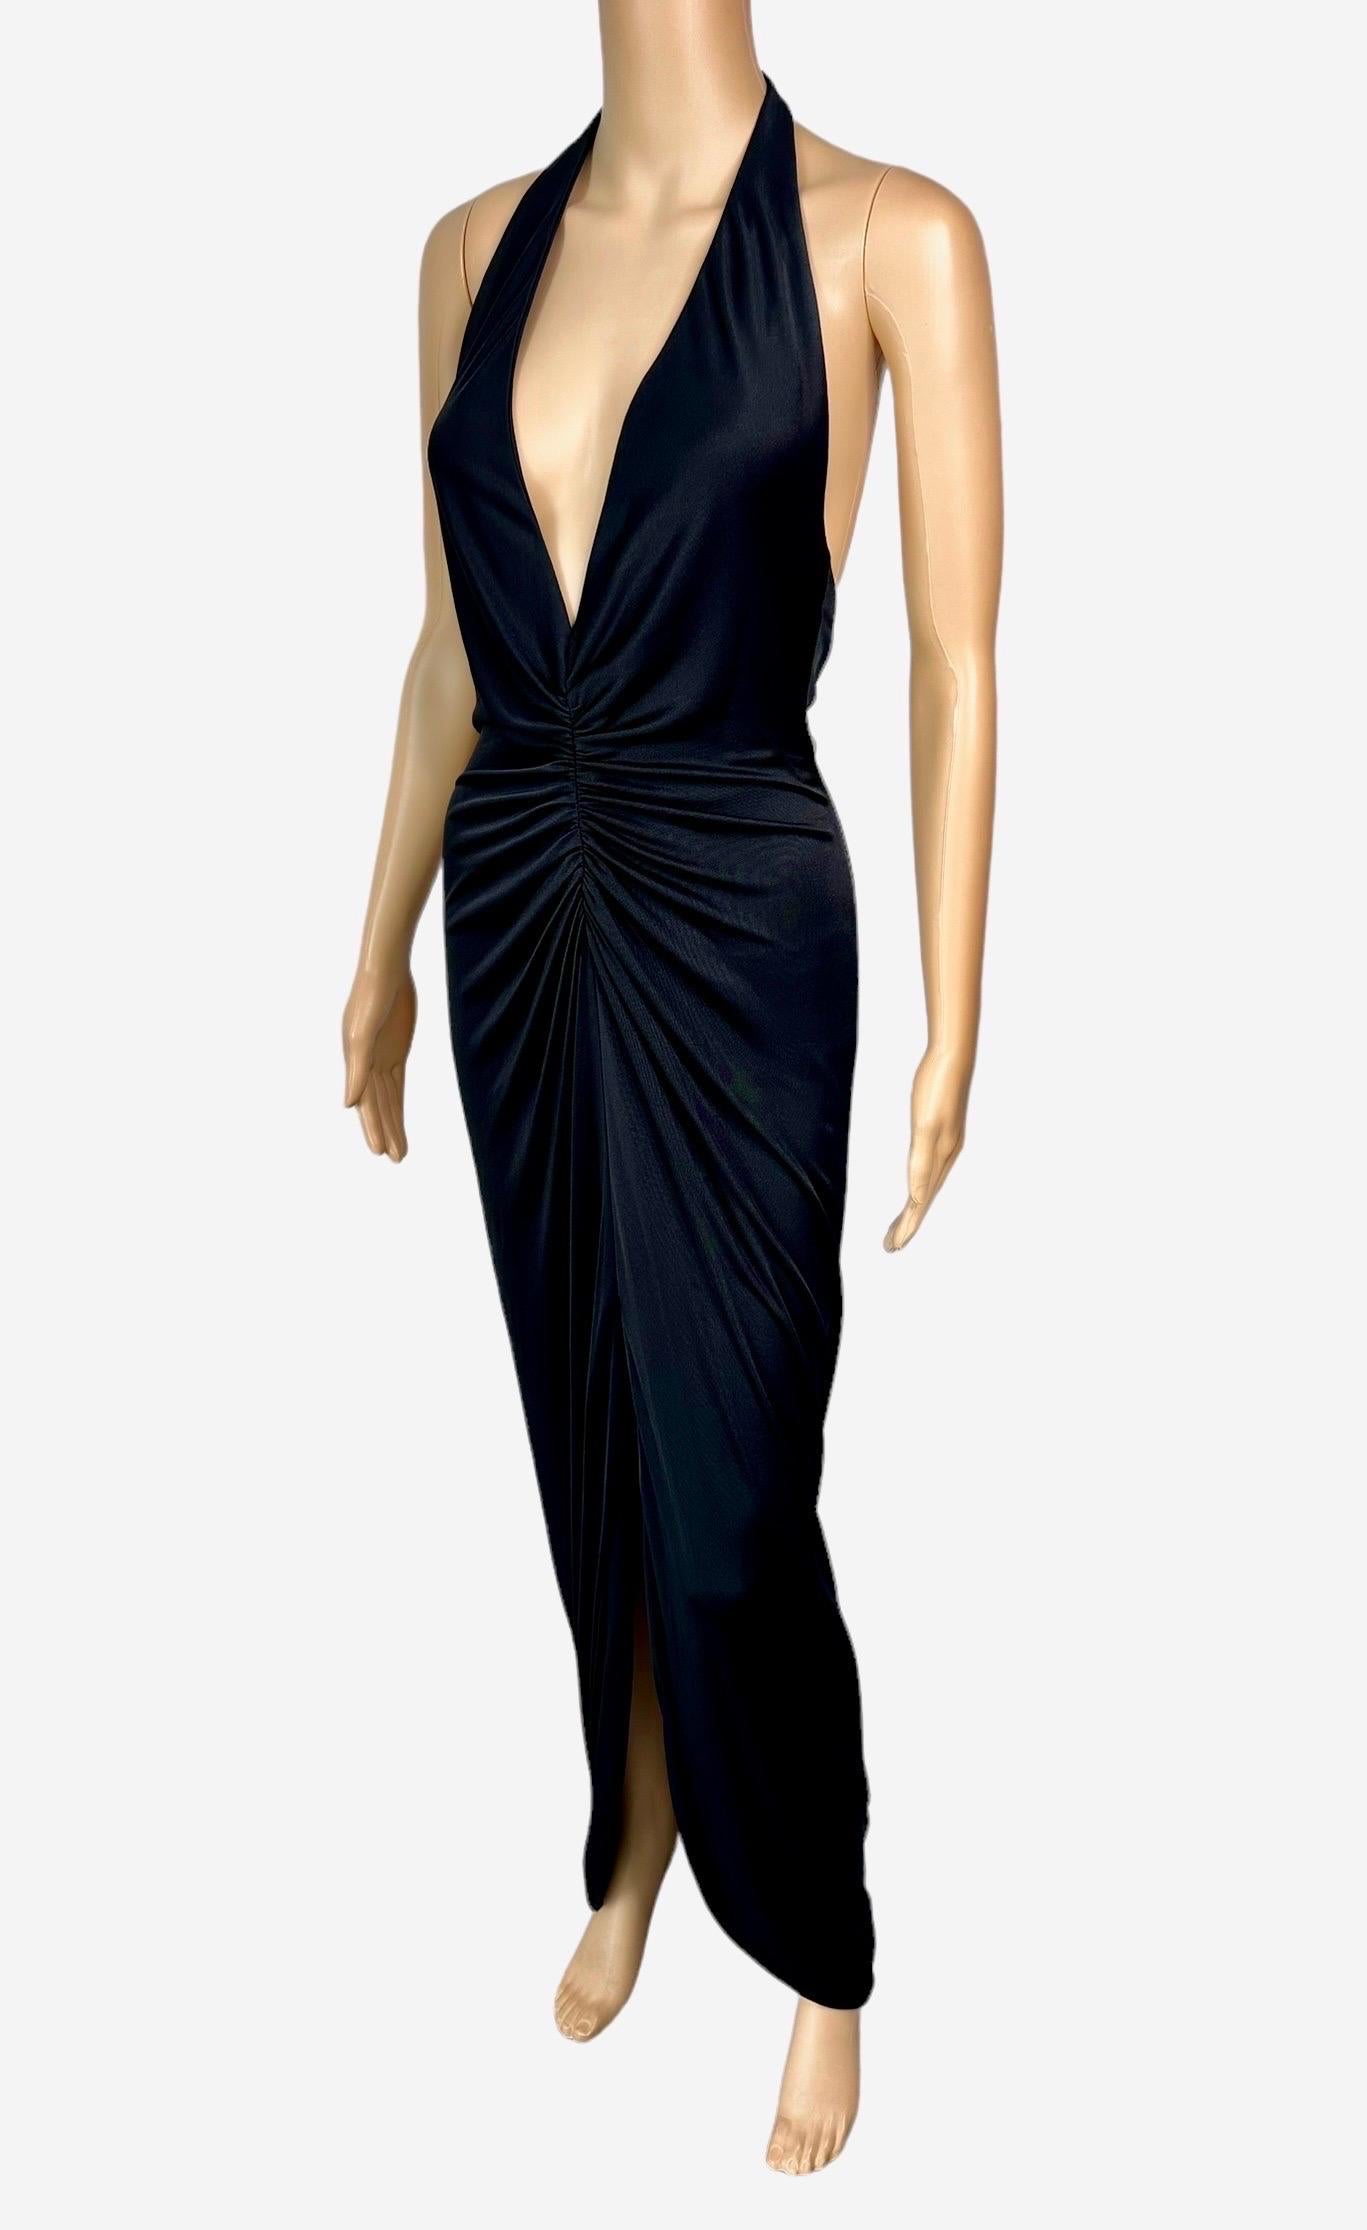 Versace S/S 2005 Laufsteg Tief ausgeschnittenes gerafftes Abendkleid mit offenem Rücken IT 42

Look  49 aus der Spring 2005 Collection (in einer anderen Farbe)

